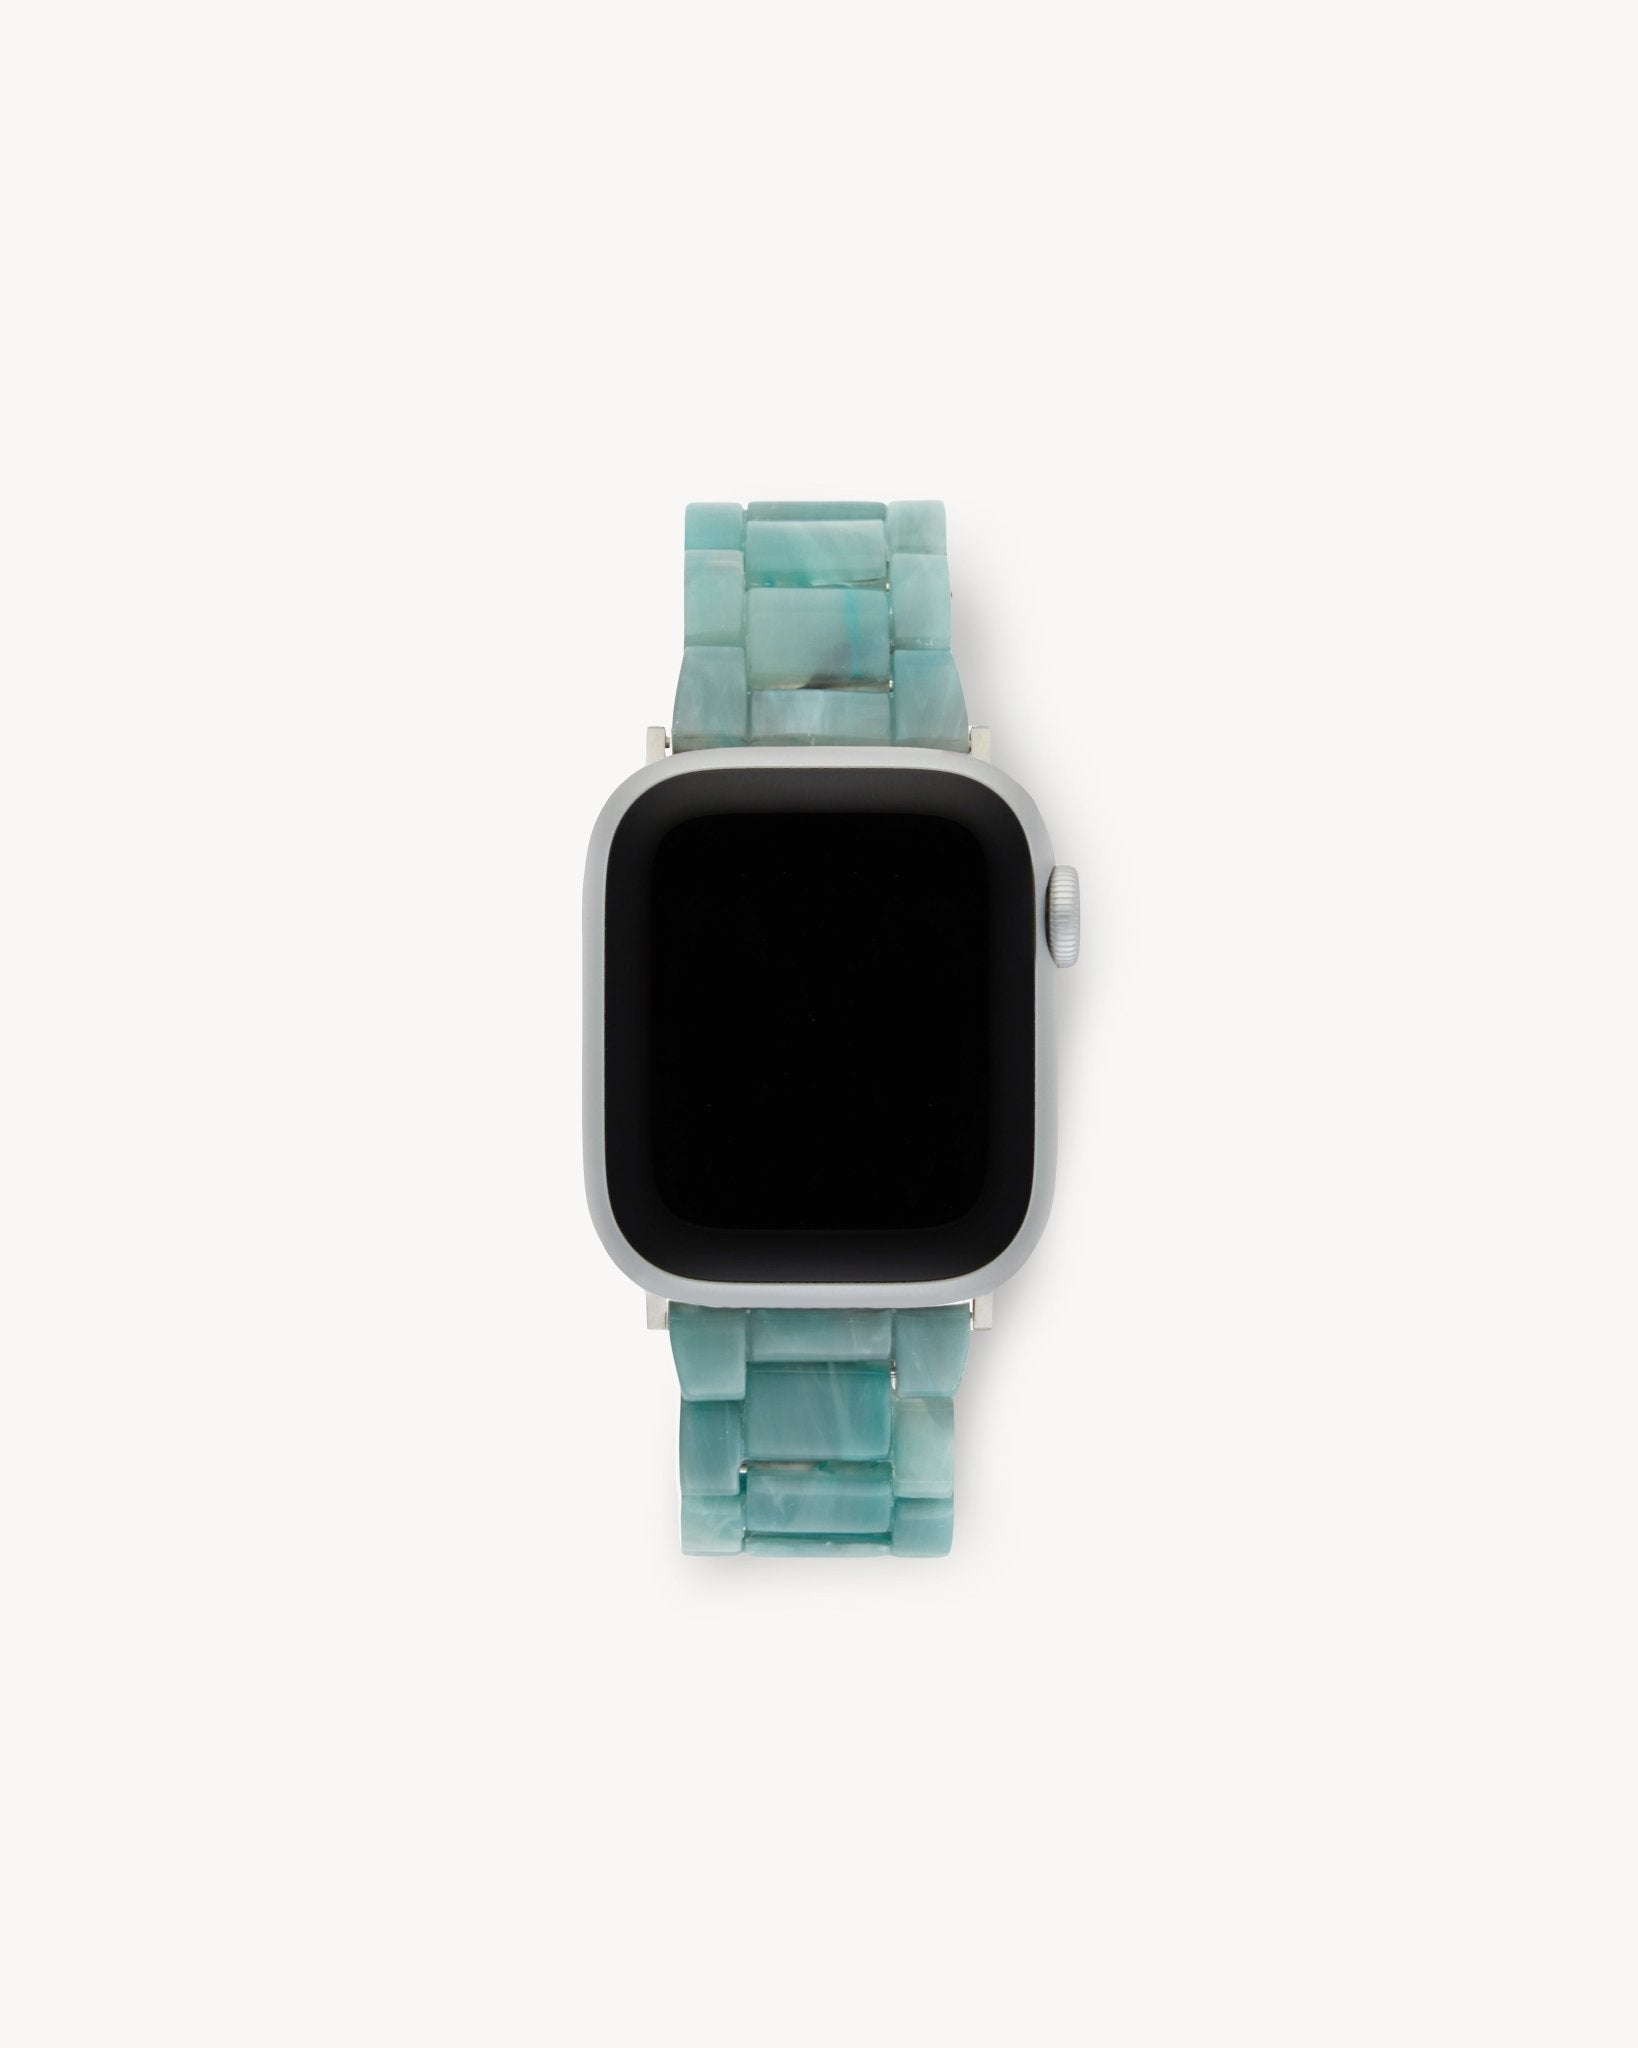 MACHETE Deluxe Apple Watch Band Set in Jadeite